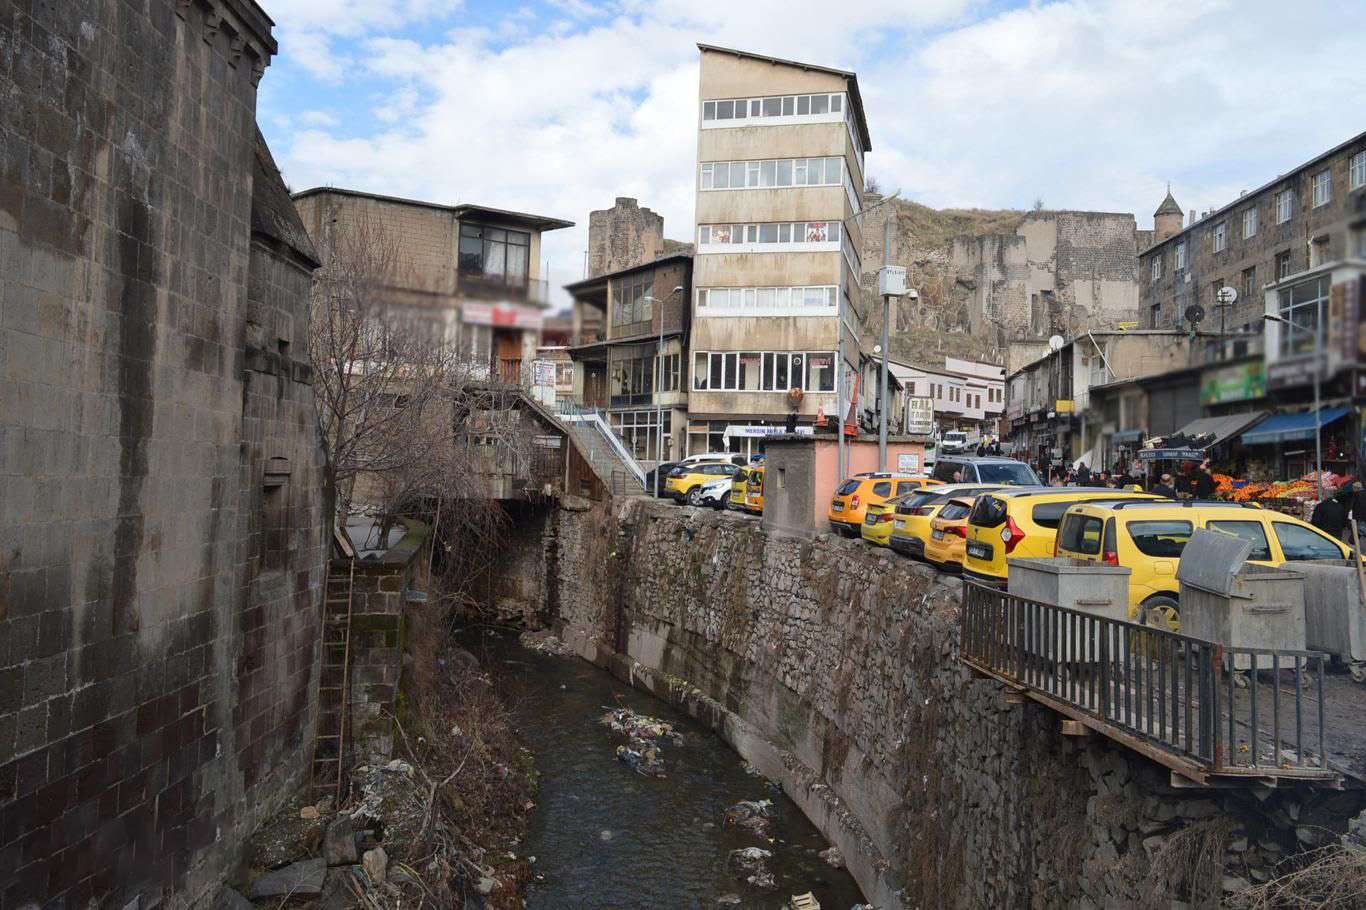 "Tarihi cami ve yapıların yıktırılacağı" iddiasına Bitlis Valiliğinden açıklama